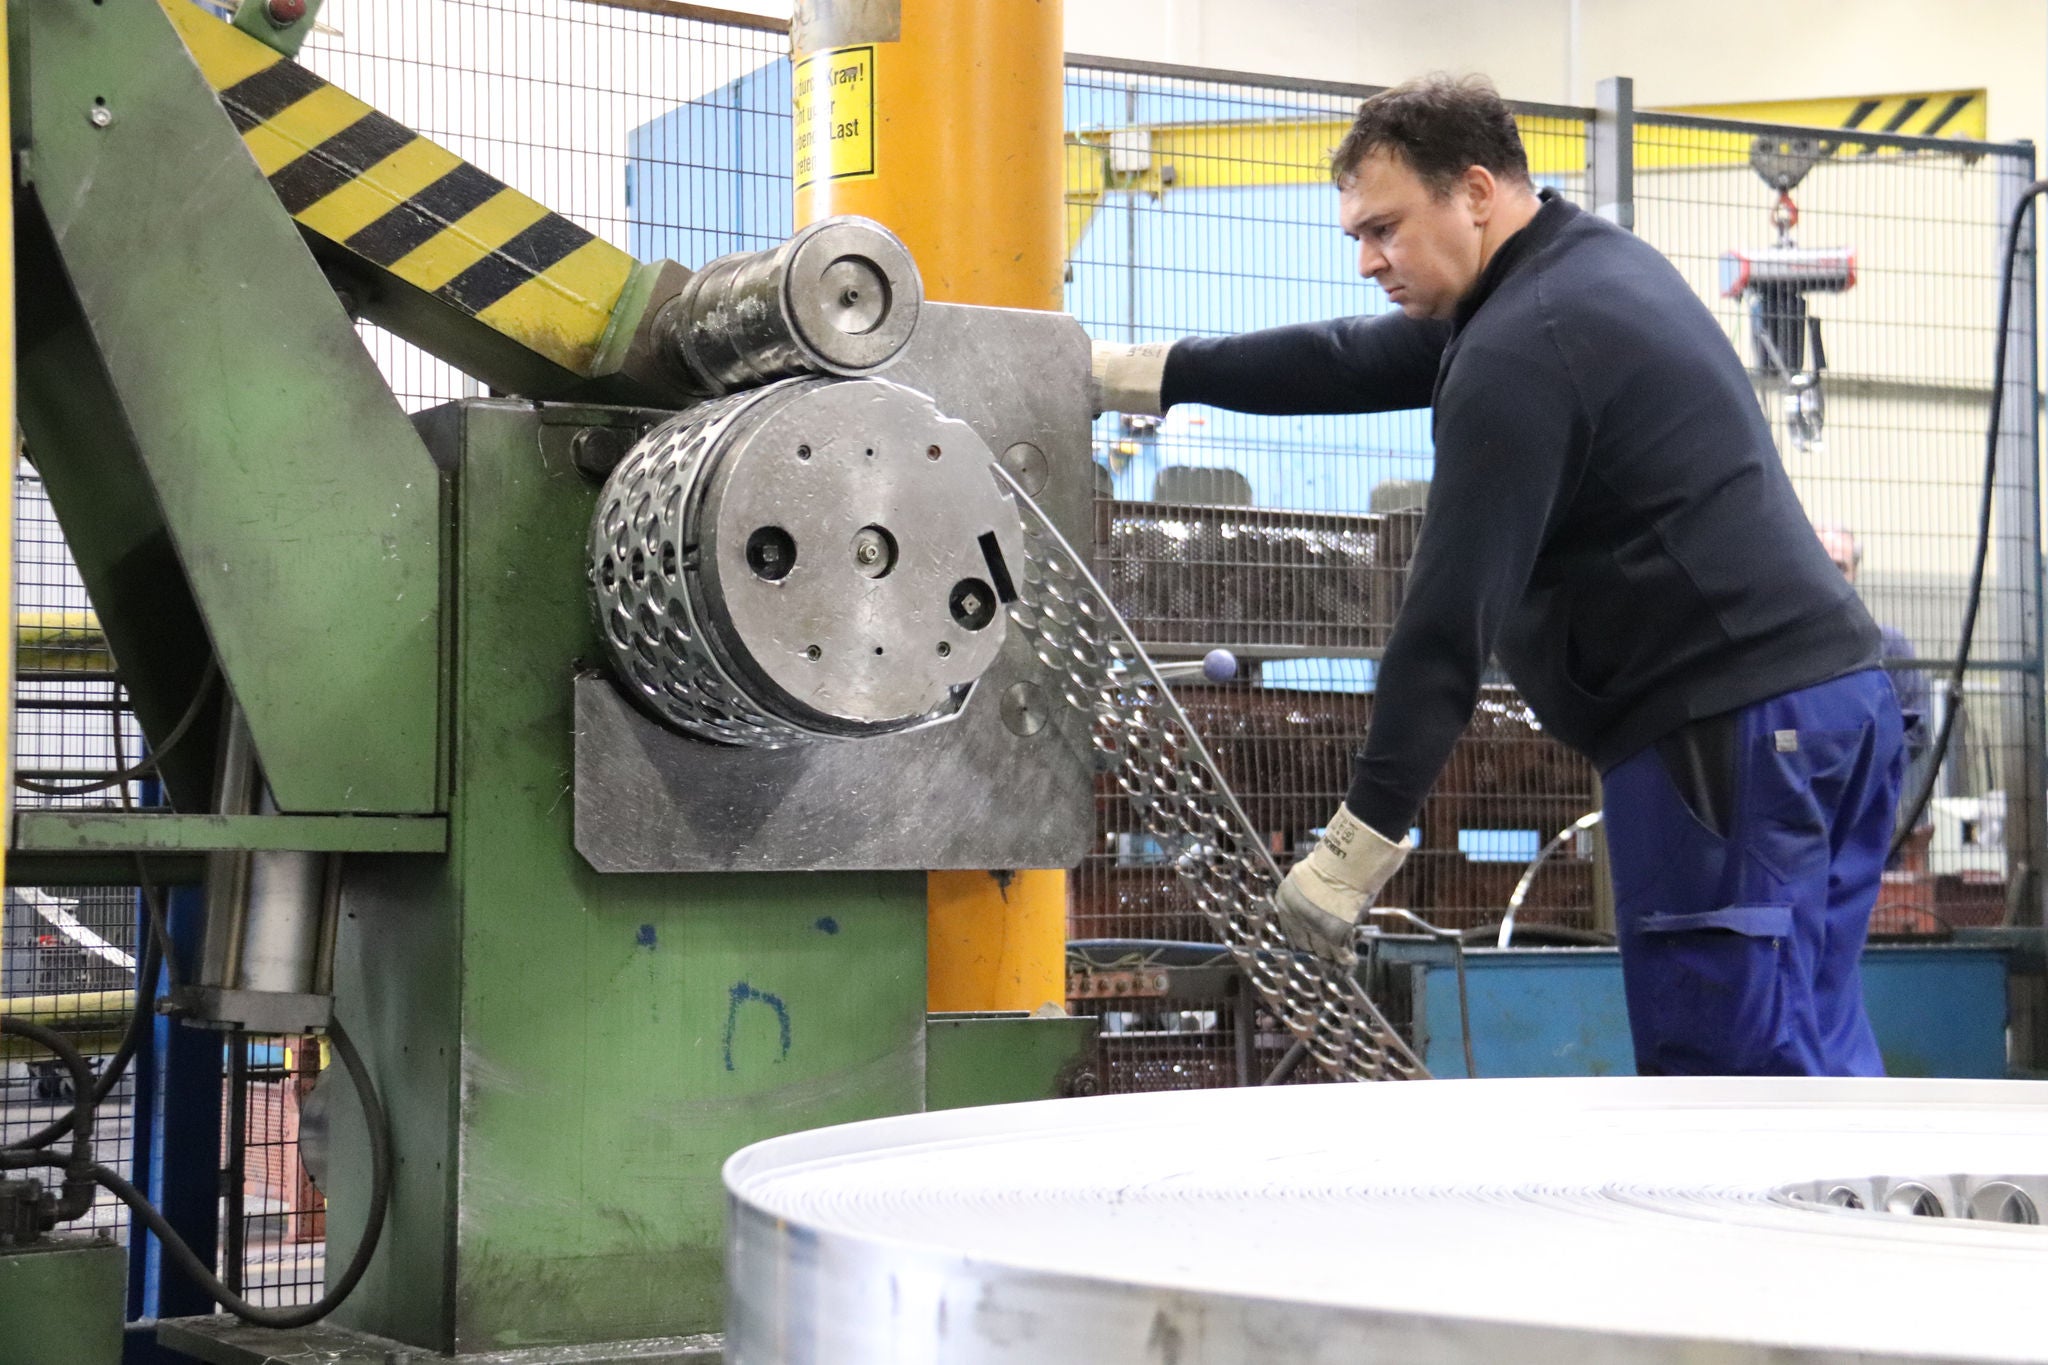 Arbeiter steht an einer Maschine, die das Aluminiumband mit den ausgestanzten Butzen aufwickelt.